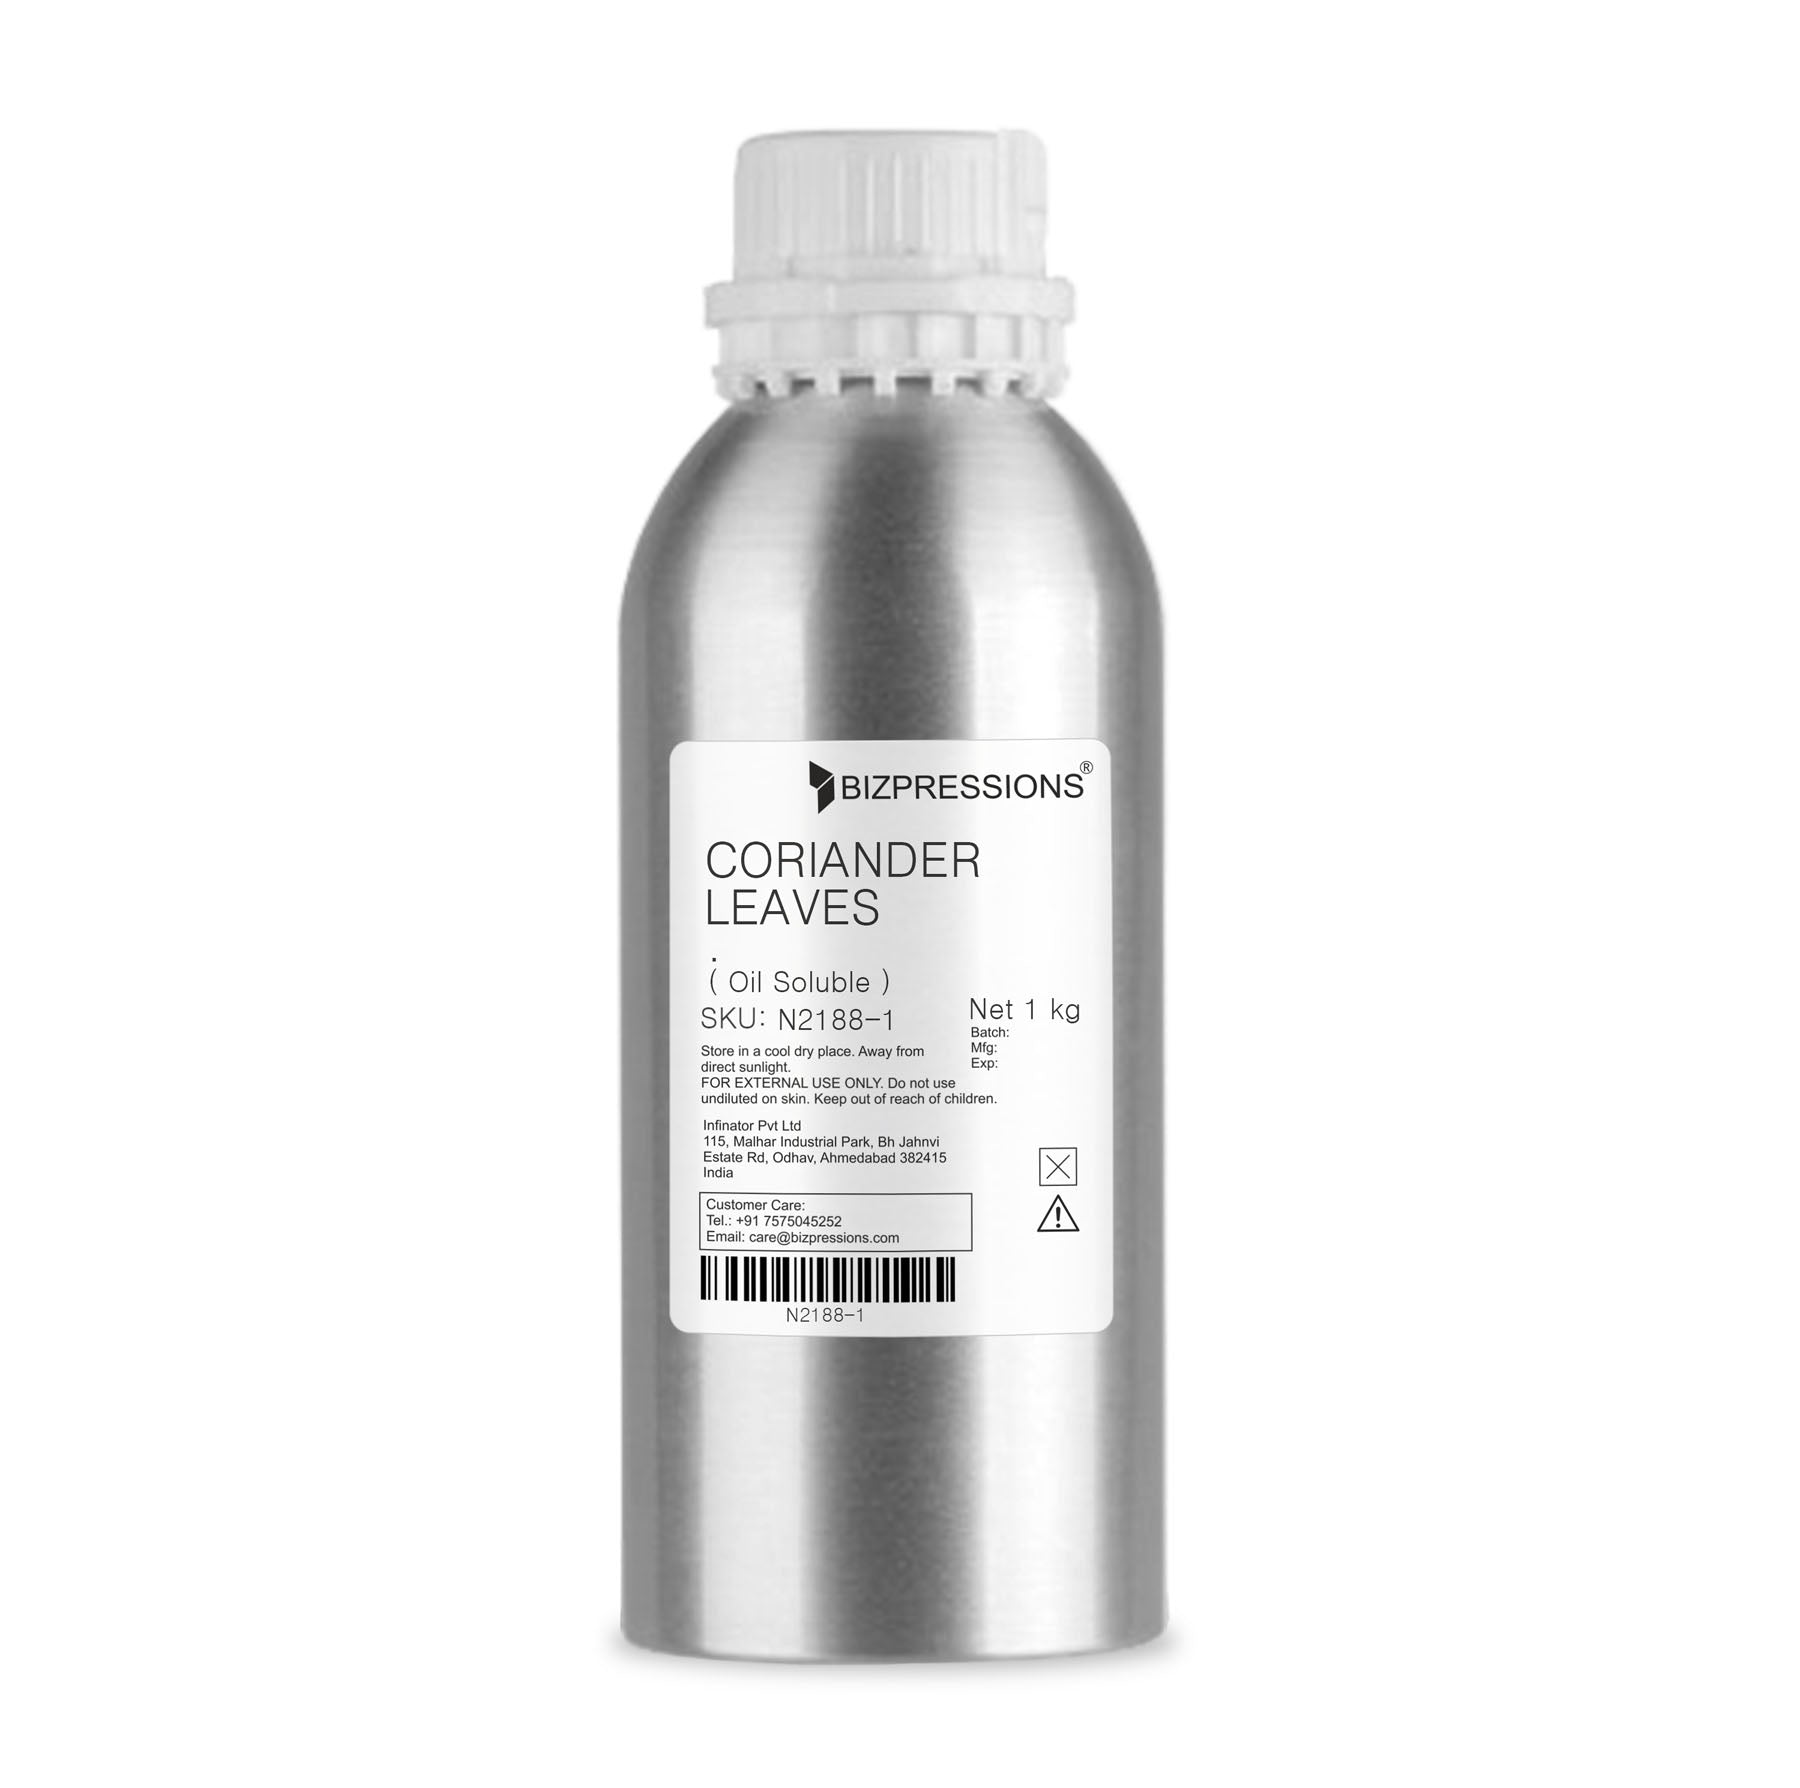 CORIANDER LEAVES - Fragrance ( Oil Soluble ) - 1 kg